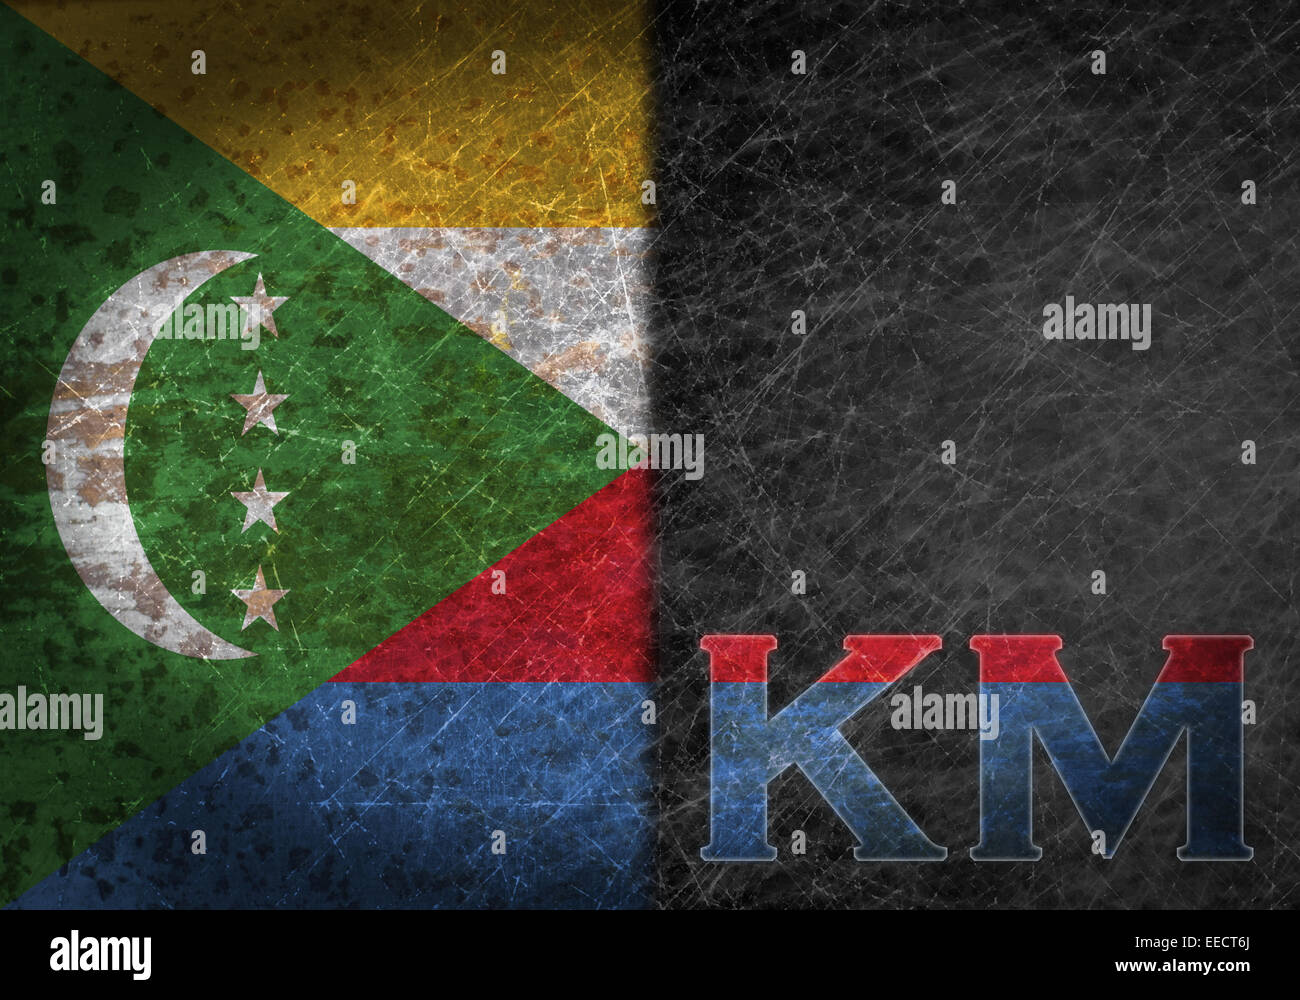 Alte rostige Blechschild mit einer Fahne und Land Abkürzung - Komoren Stockfoto